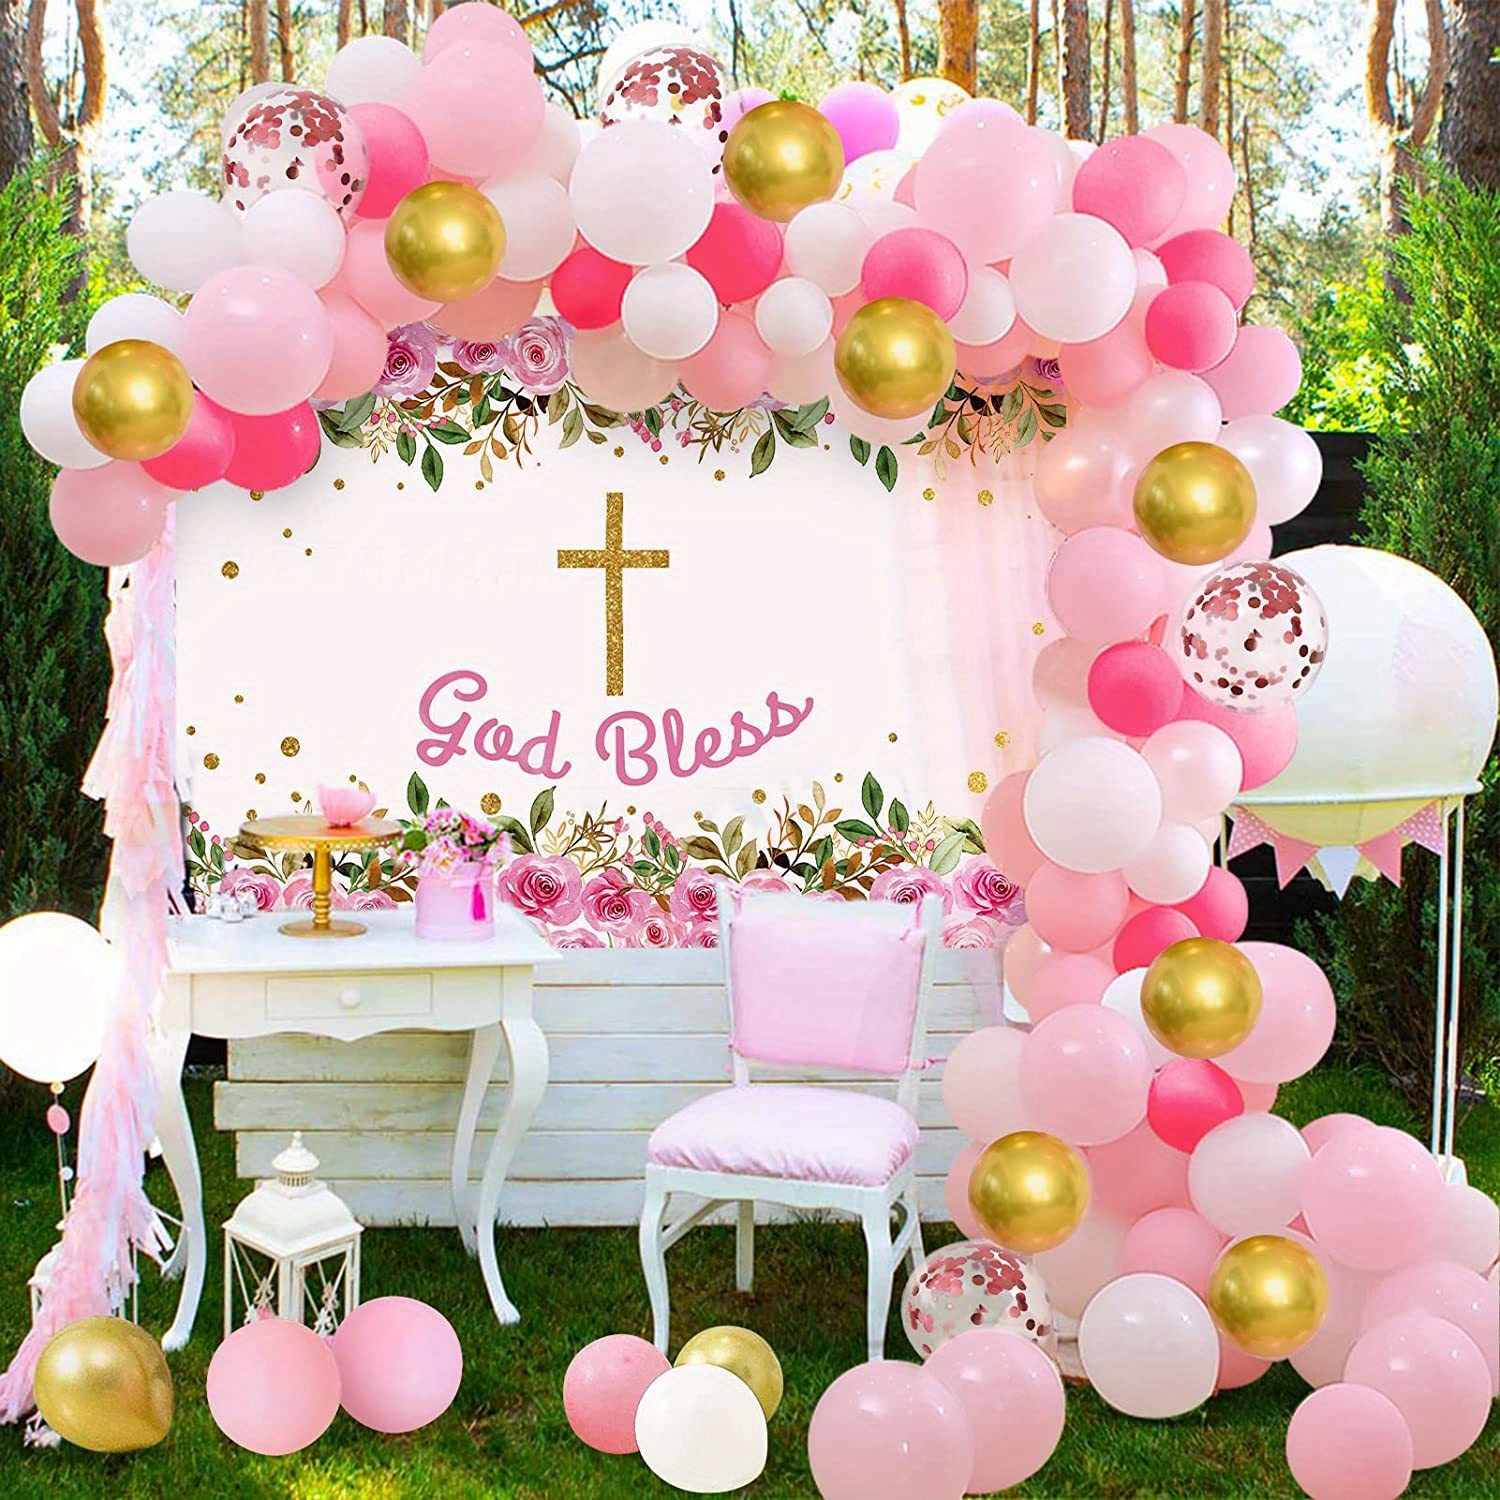  Decoraciones de fiesta de bautismo para niñas, kit de guirnalda  de globos rosa y blanco, decoración de bautizo de confirmación de la  primera comunión, globos cruzados de fondo para bautismo 